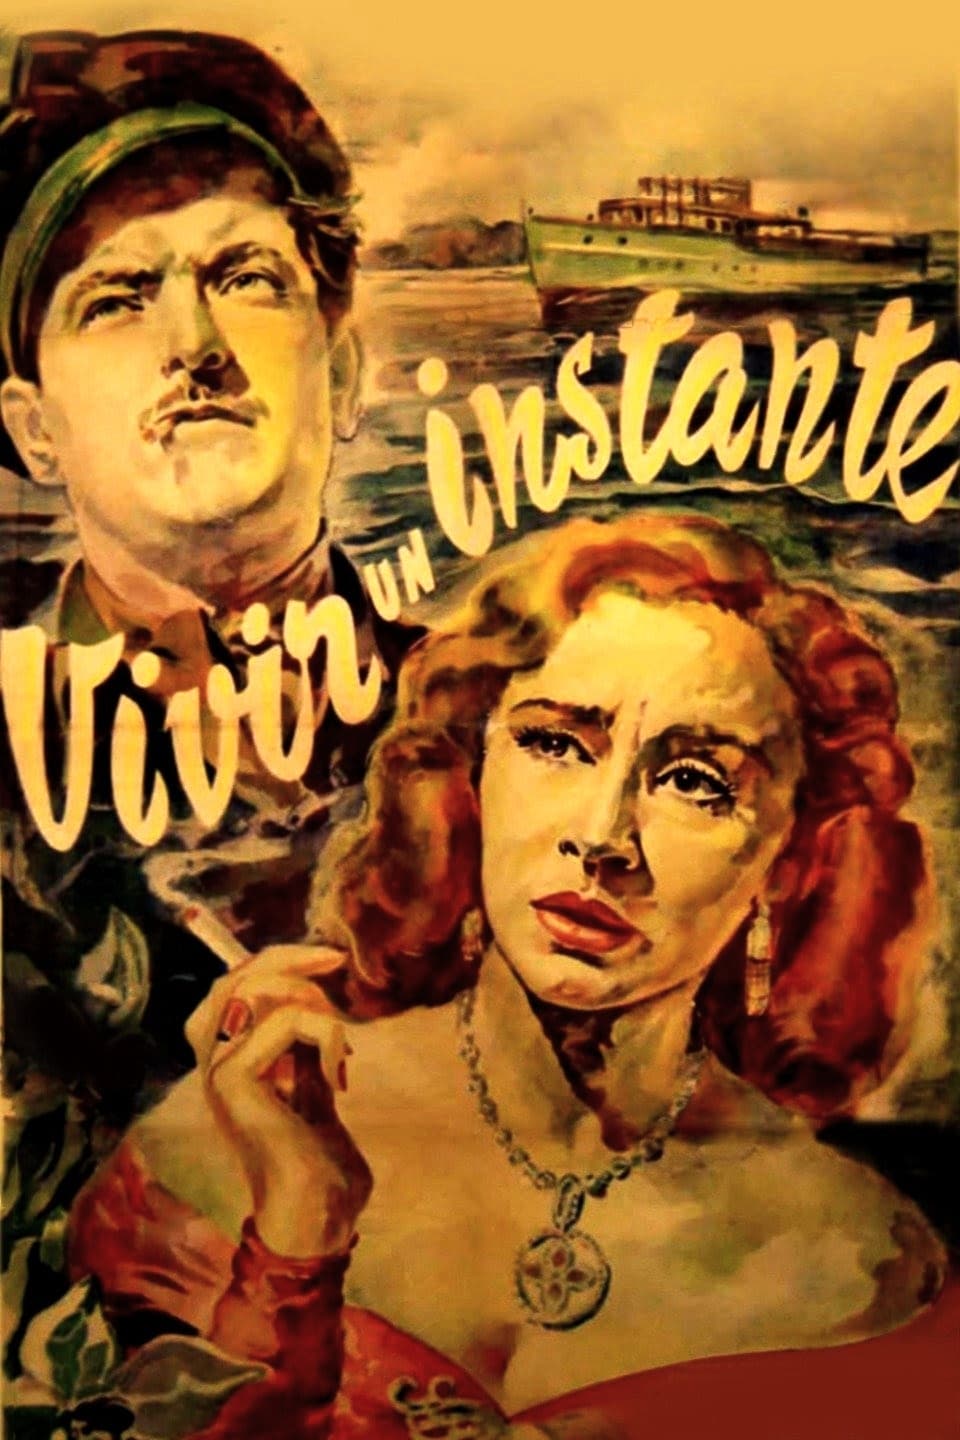 Vivir un instante (1951)